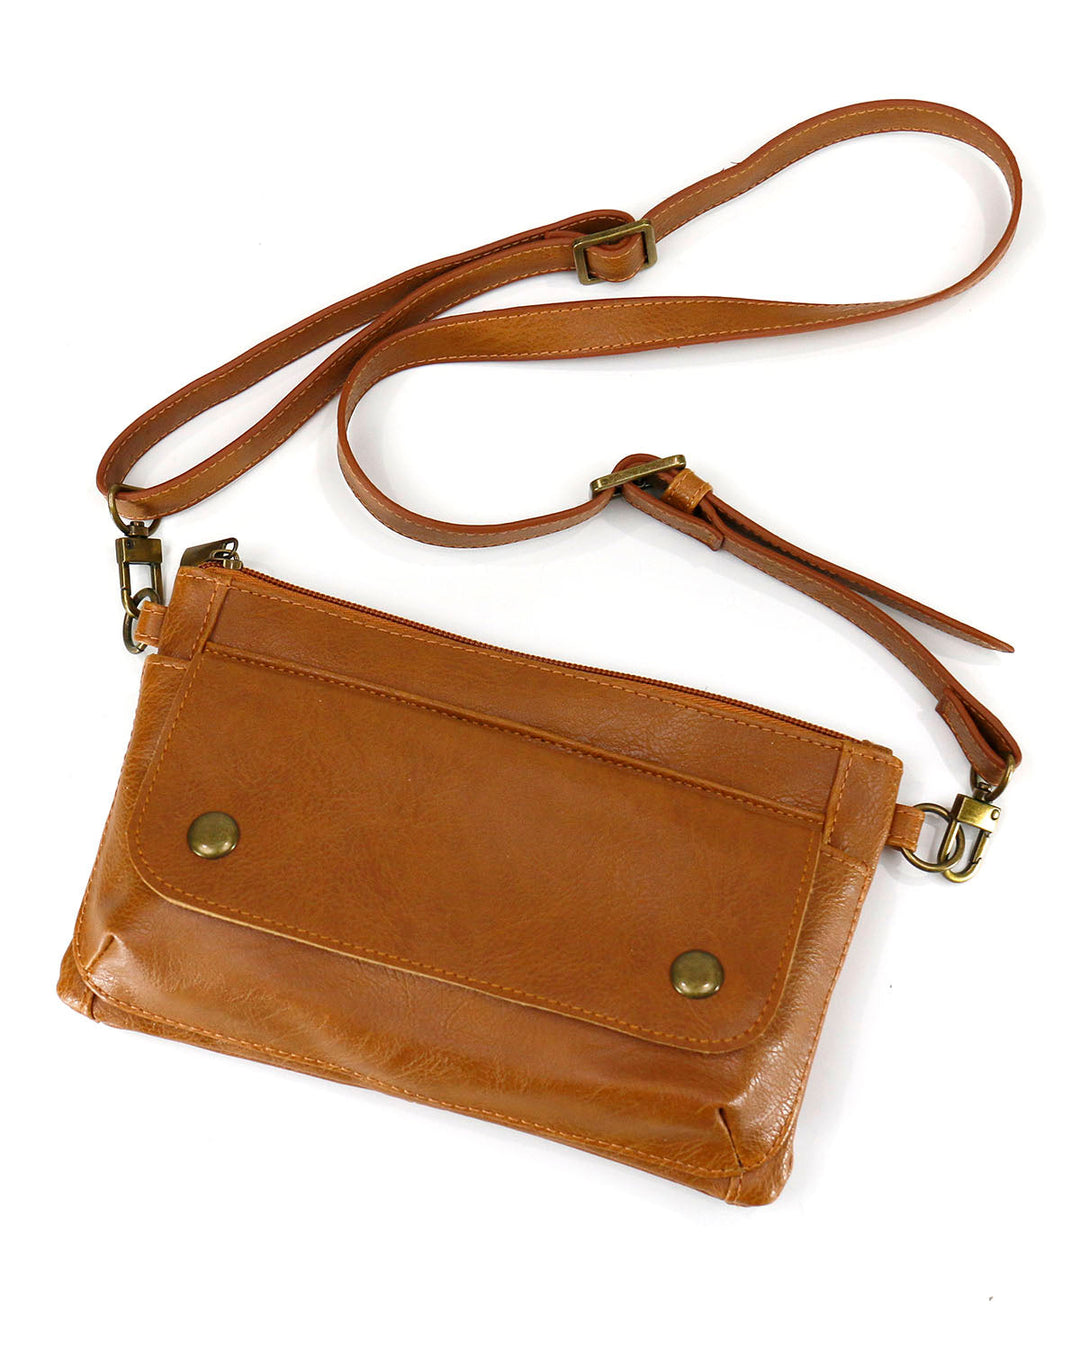 Vegan Leather Essentials Belt Bag in Cognac by Grace & Lace